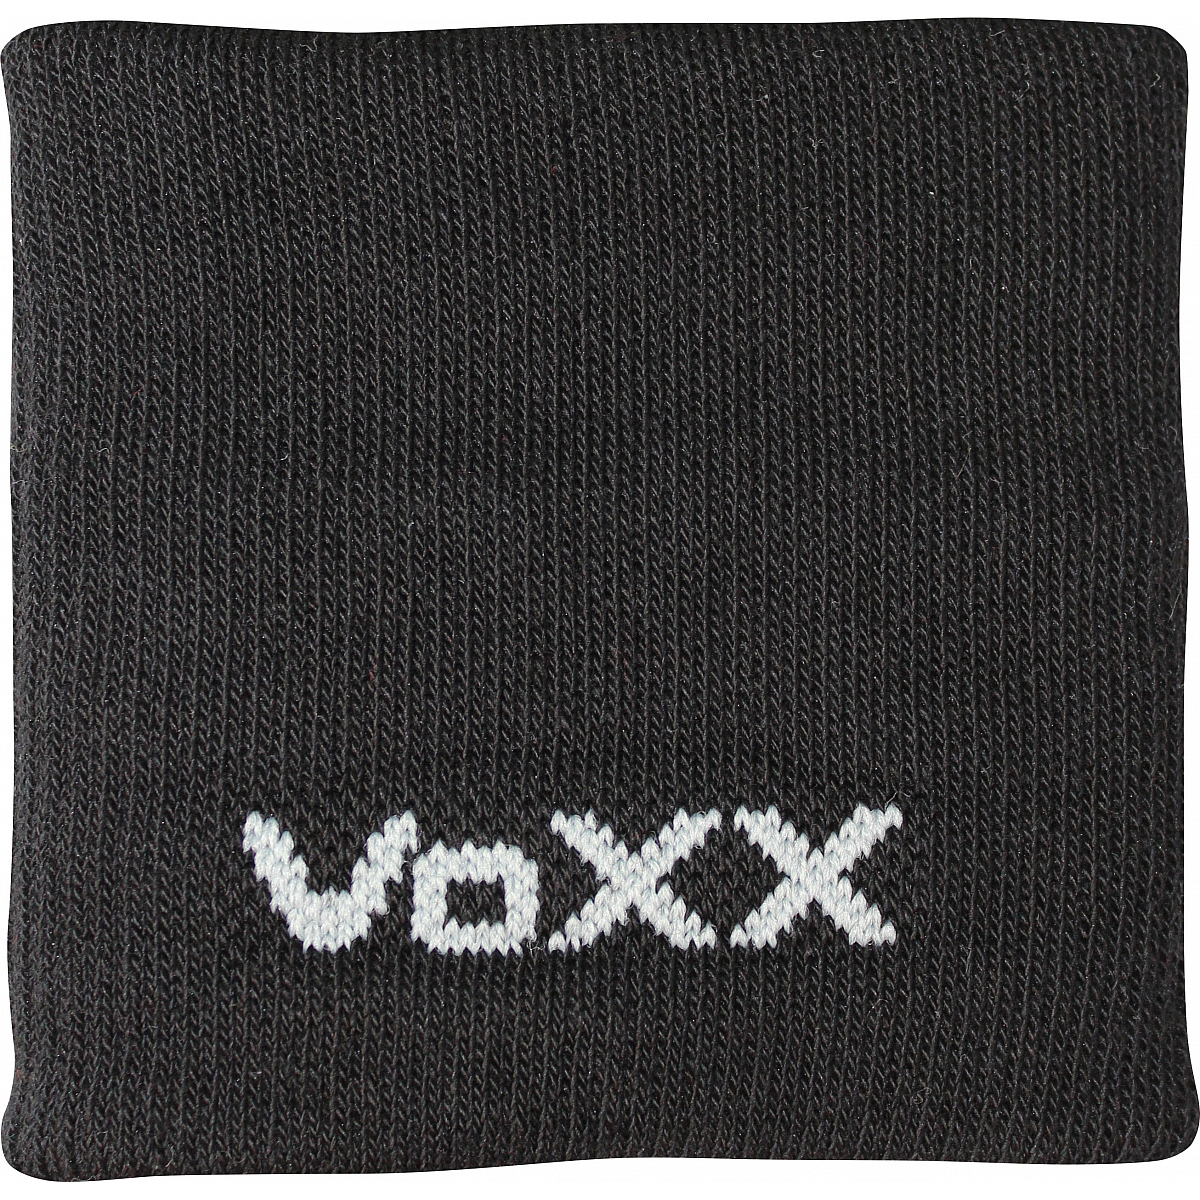 Potítko na zápěstí Voxx - černé